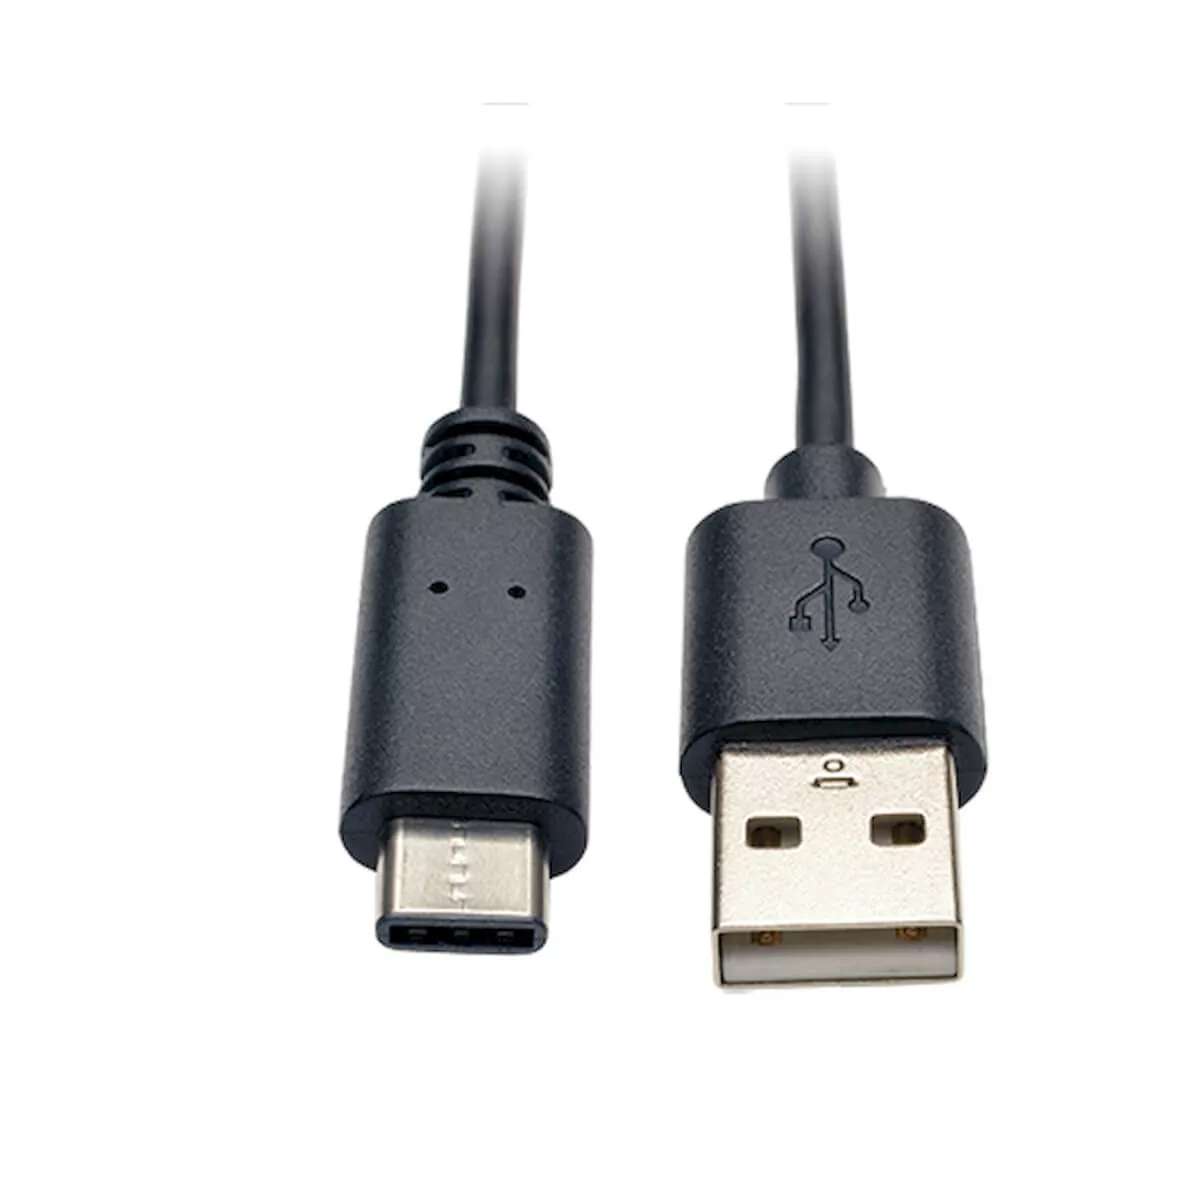 Achat EATON TRIPPLITE USB-A to USB-C Cable USB 2.0 M/M 3ft au meilleur prix